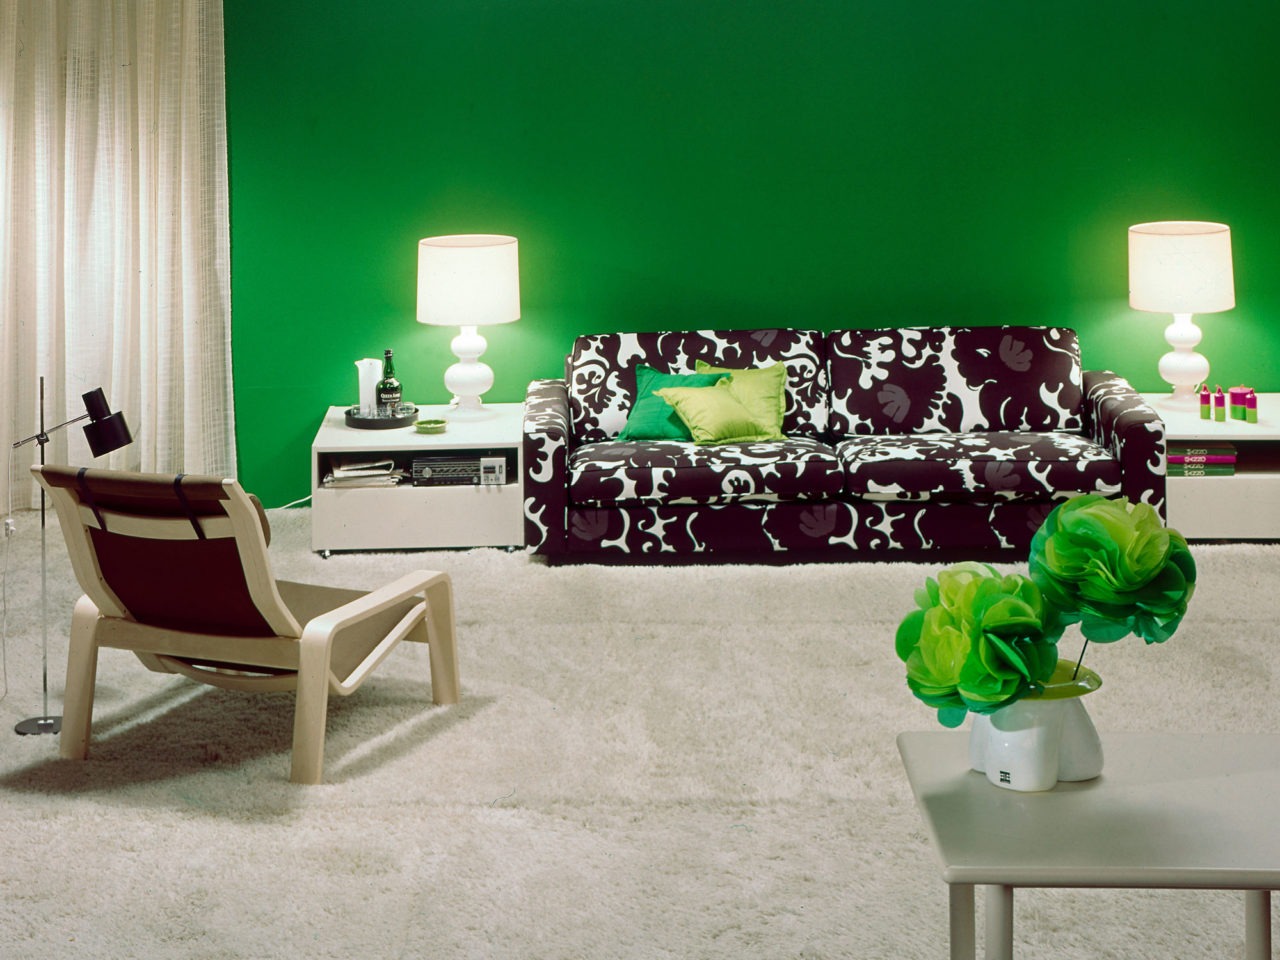 Svartvitmönstrad soffa, modell MIX, i ett rum med heltäckande matta och detaljer i vitt och dekorationer och vägg i illgrönt.